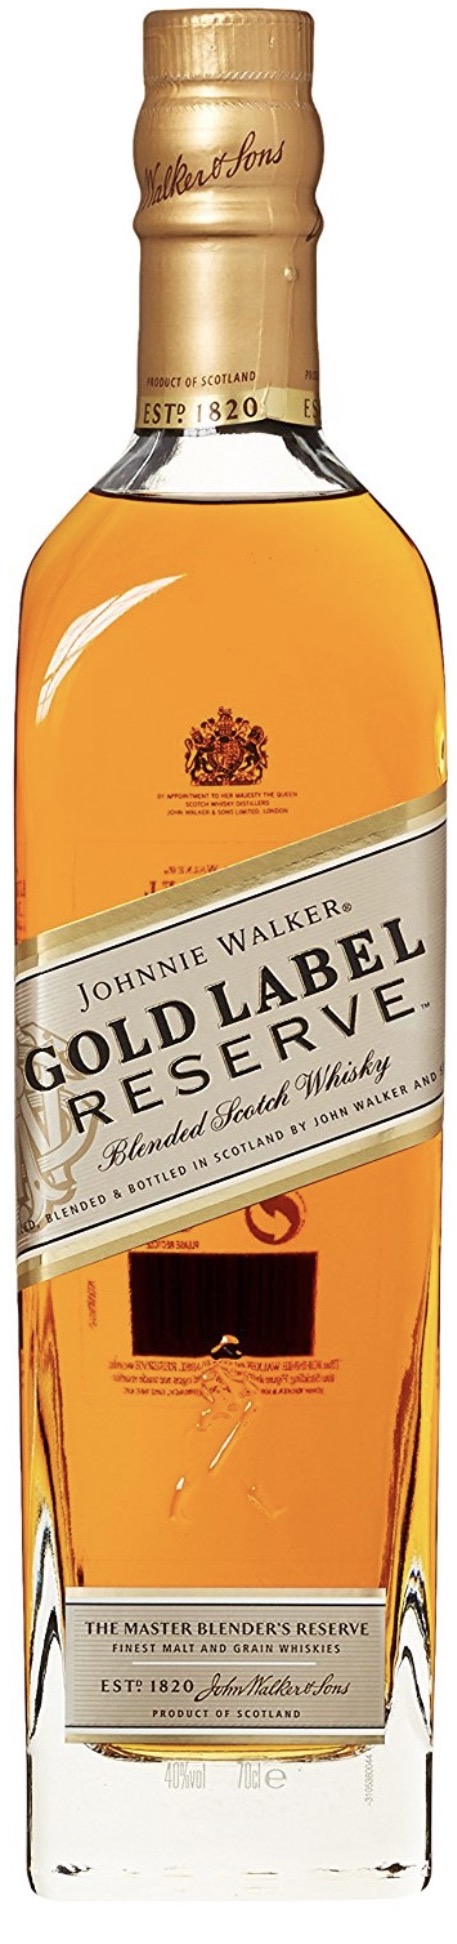 Johnnie Walker Gold Label Reserve 40% vol. 0,7L